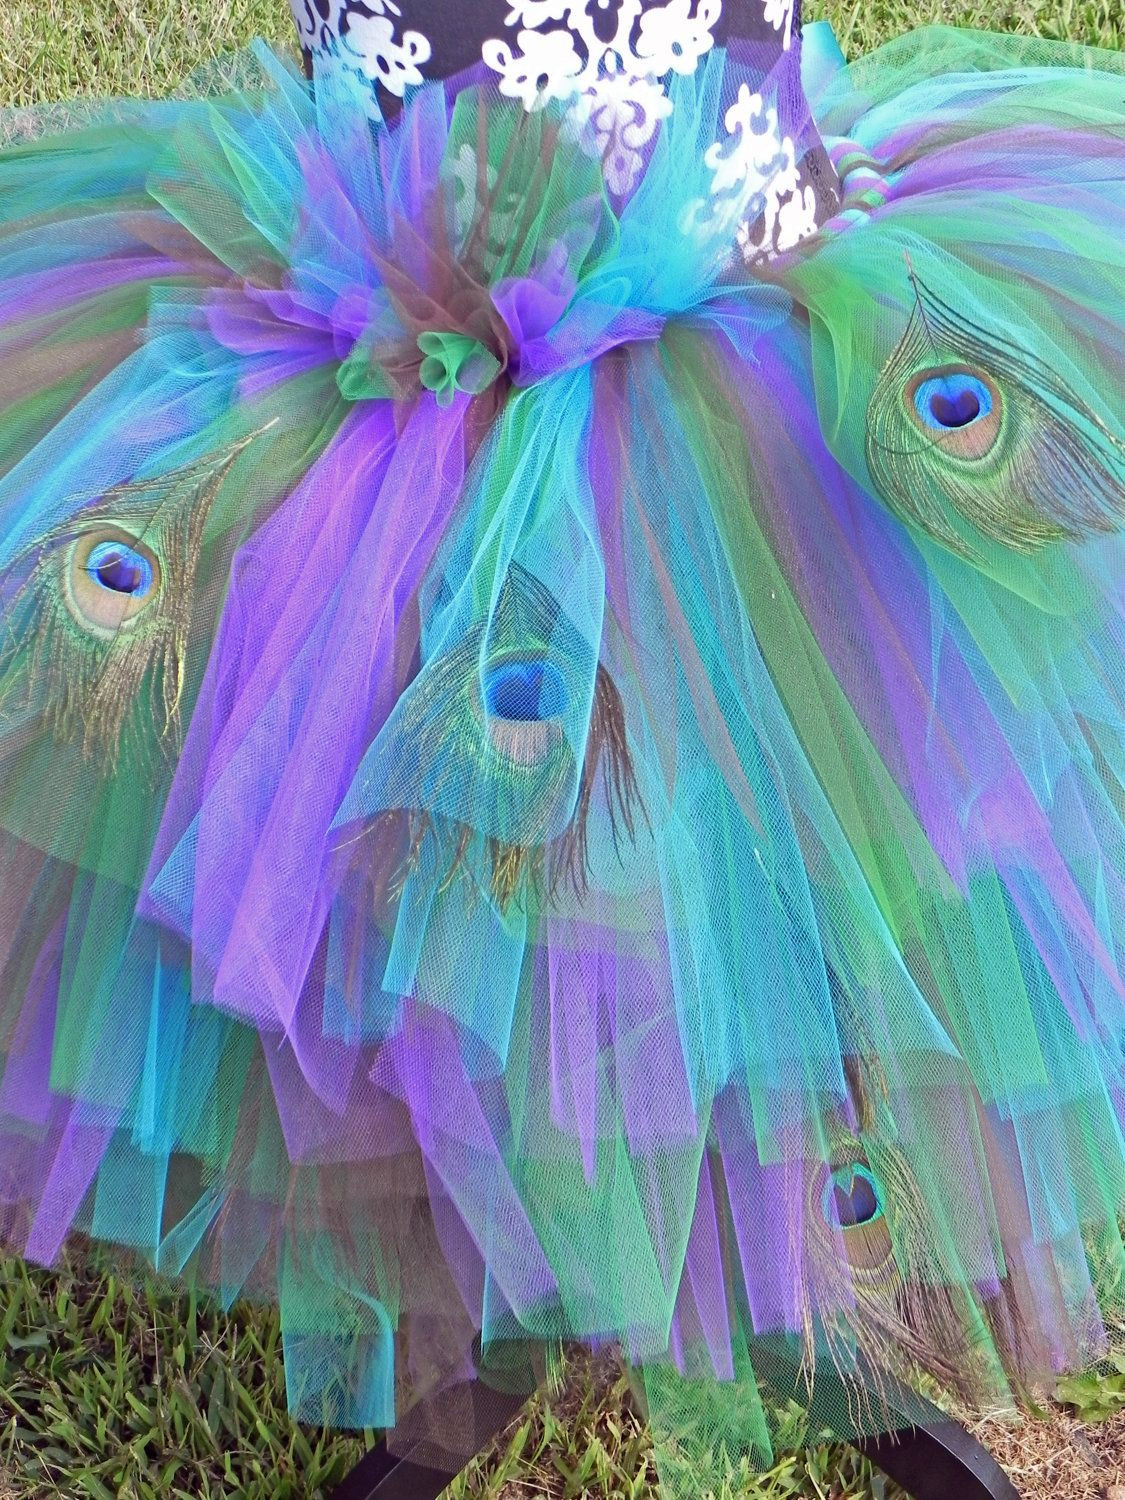 DIY Tutu For Adults
 Peafection Peacock Adult Elaborate Tutu Costume $110 00